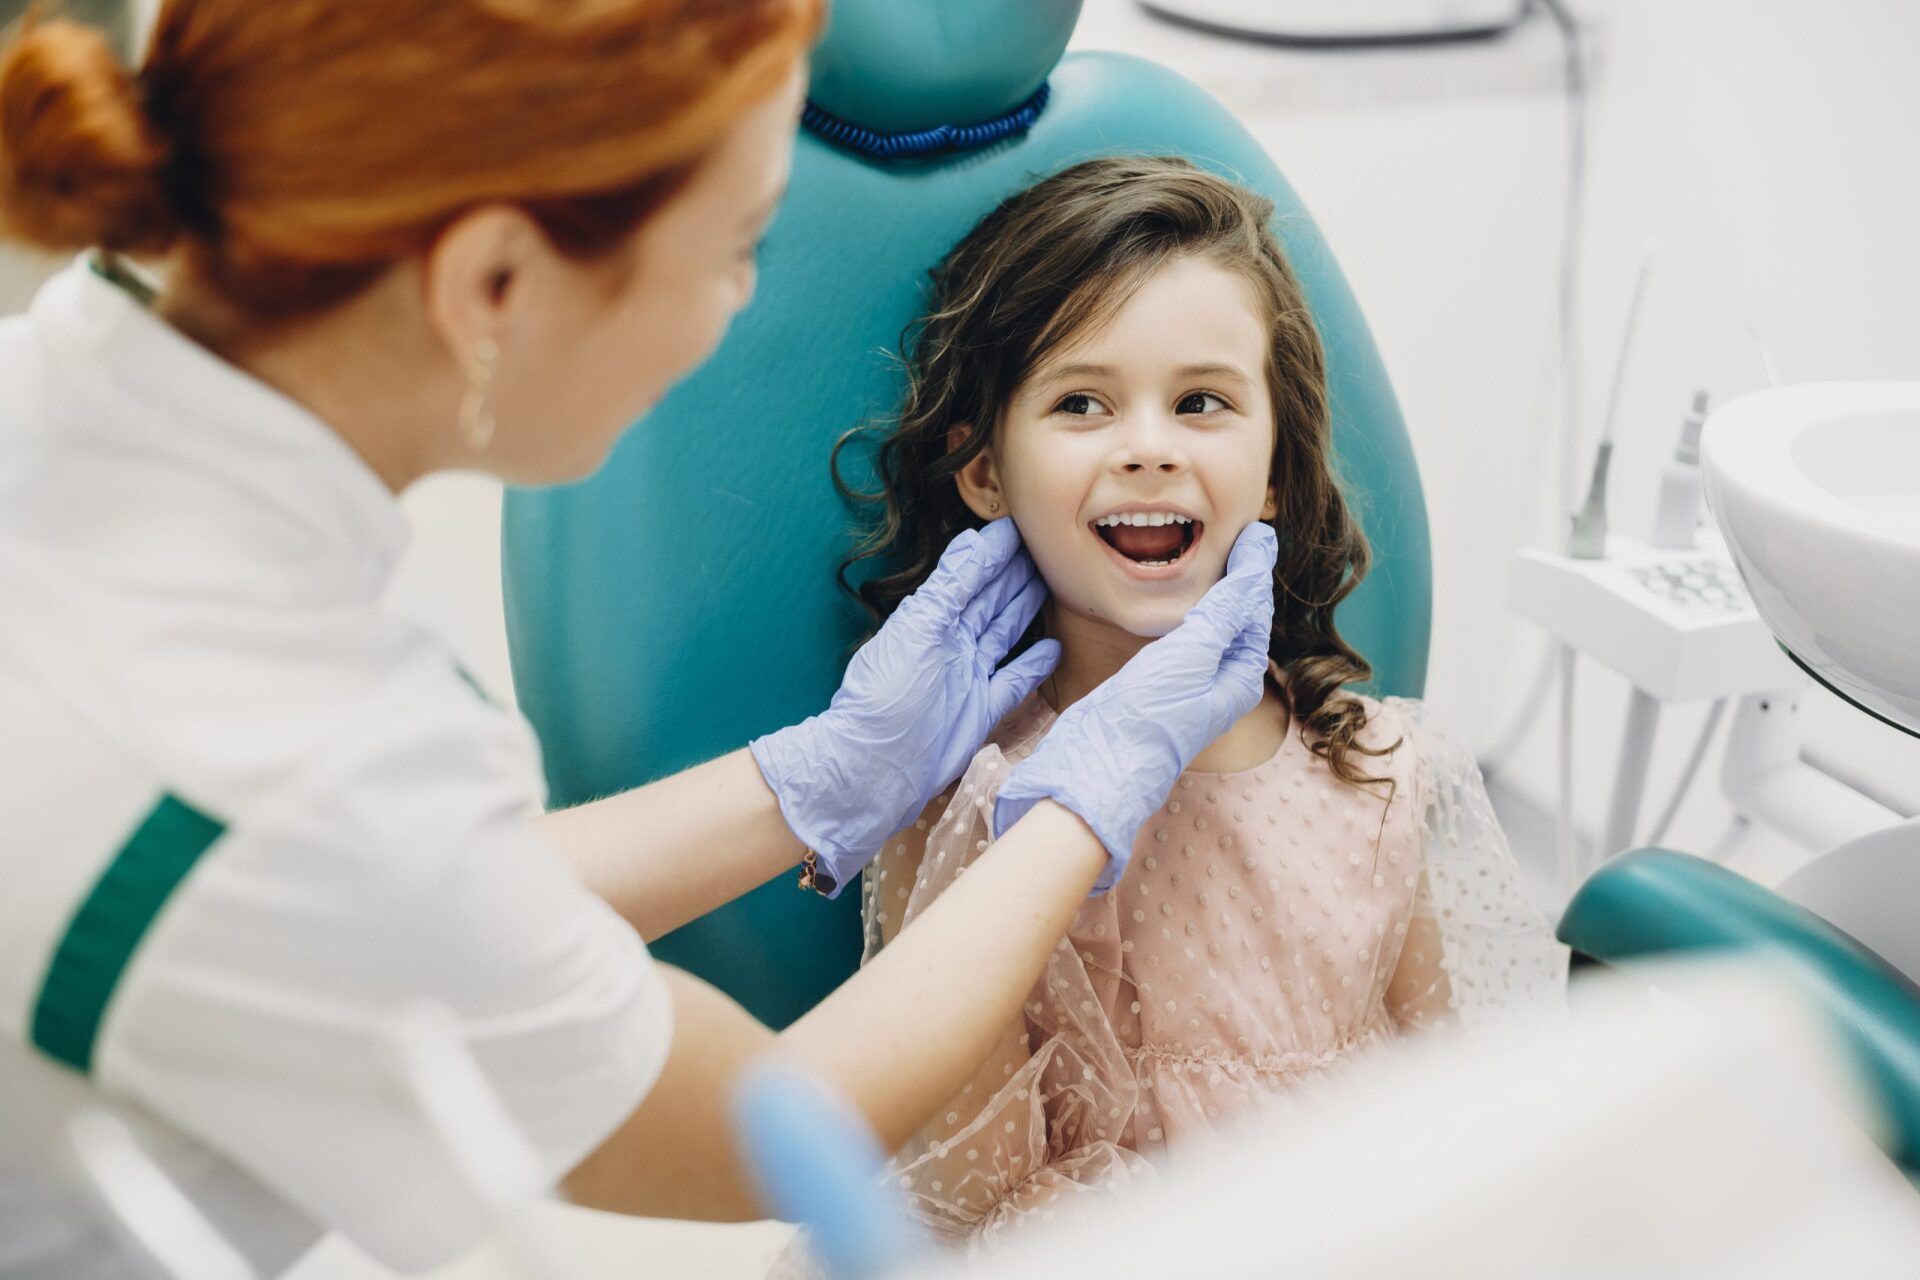 uma menina está sentada em uma cadeira odontológica enquanto um dentista examina seus dentes.